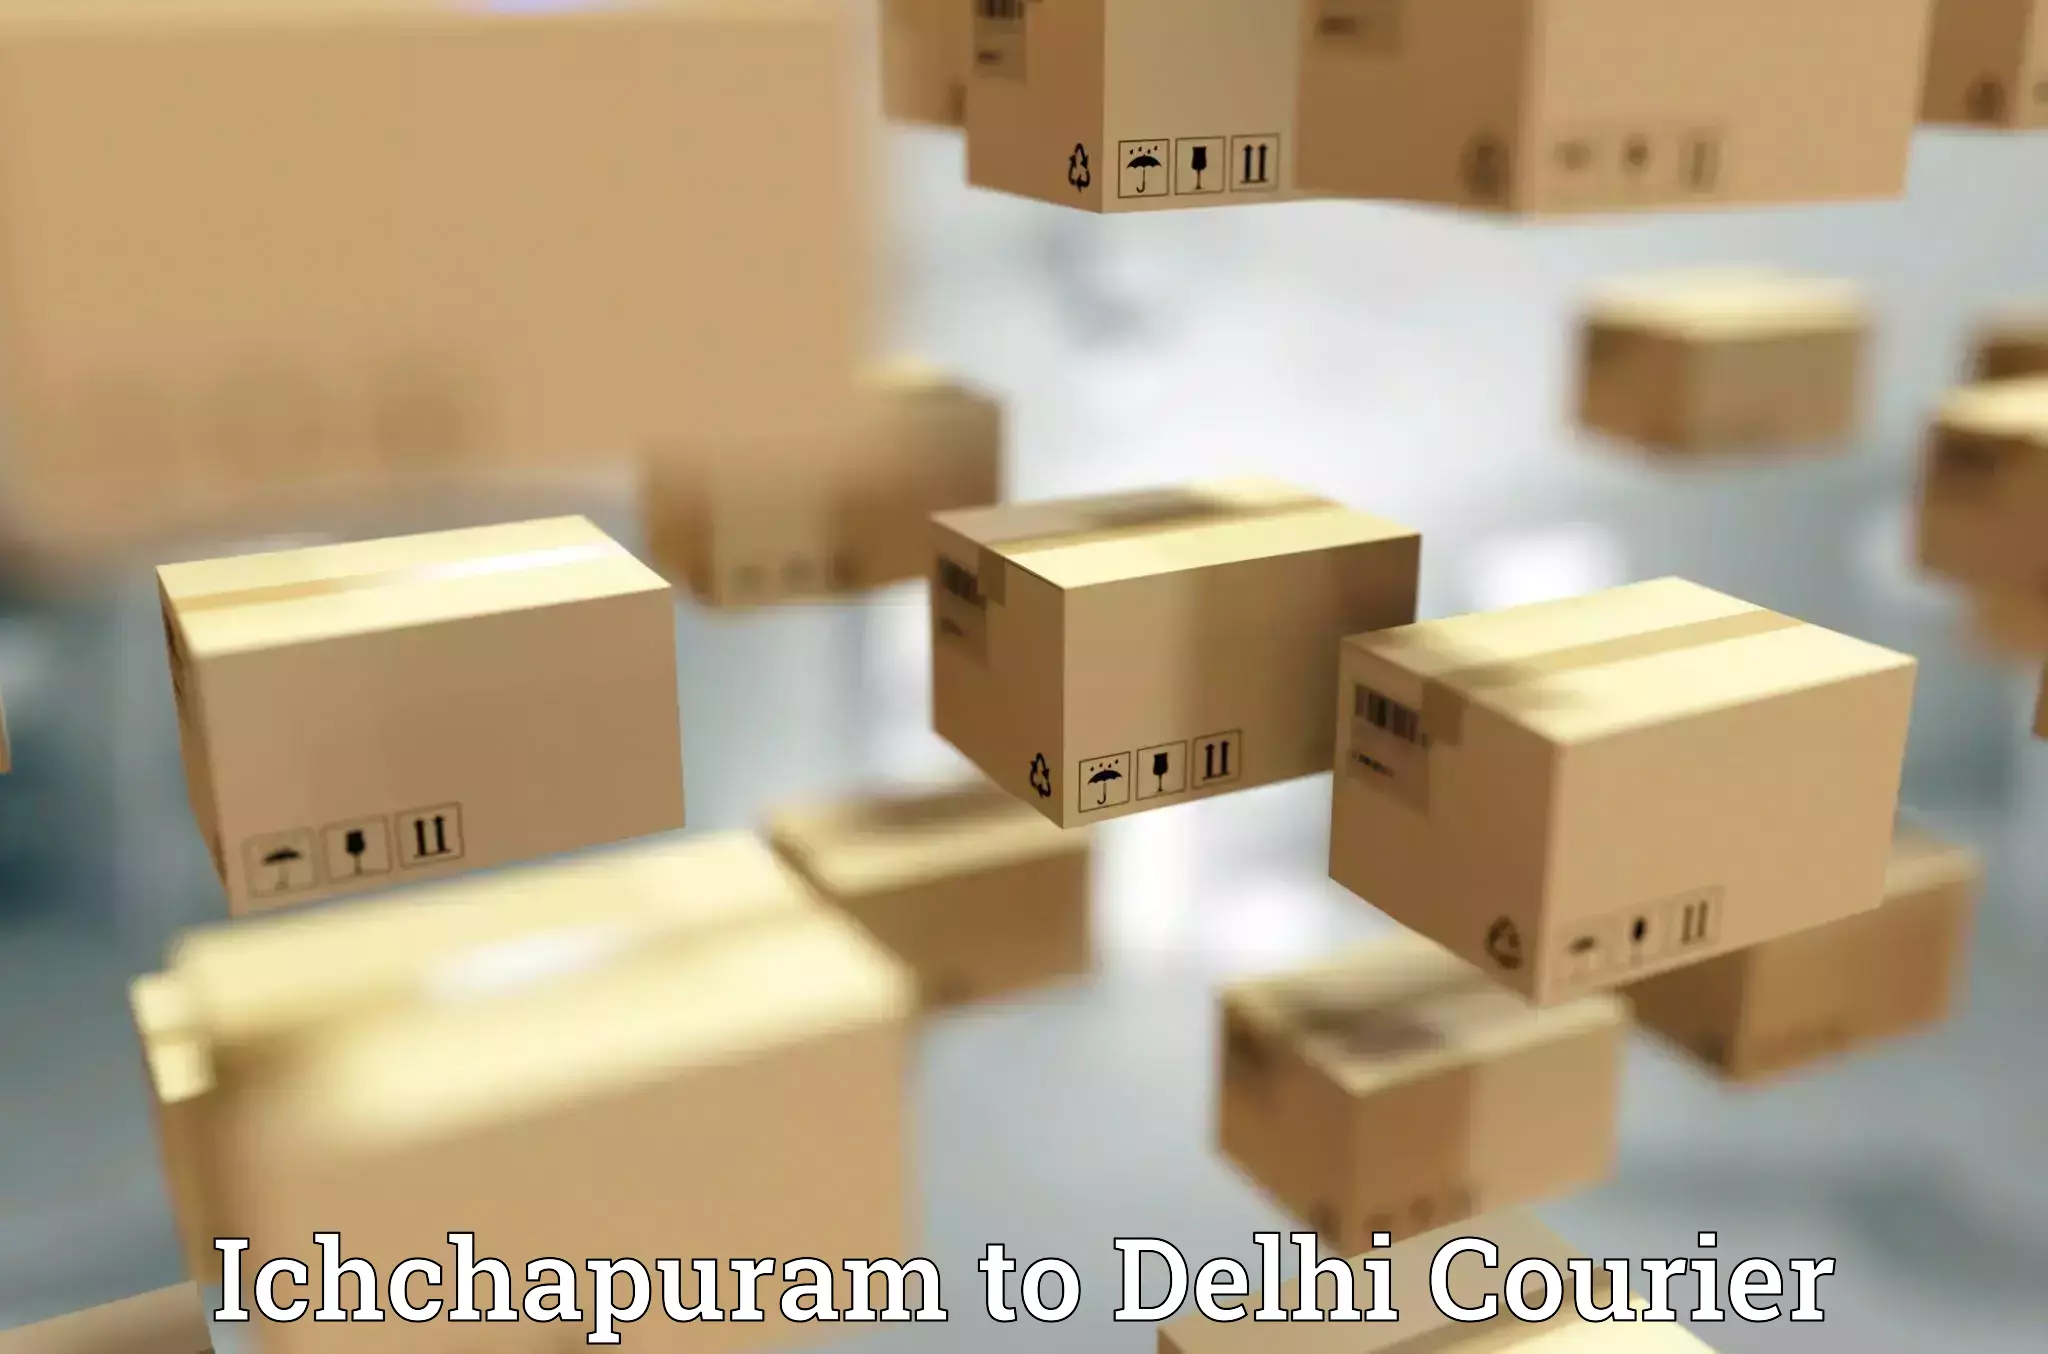 High-speed parcel service Ichchapuram to East Delhi